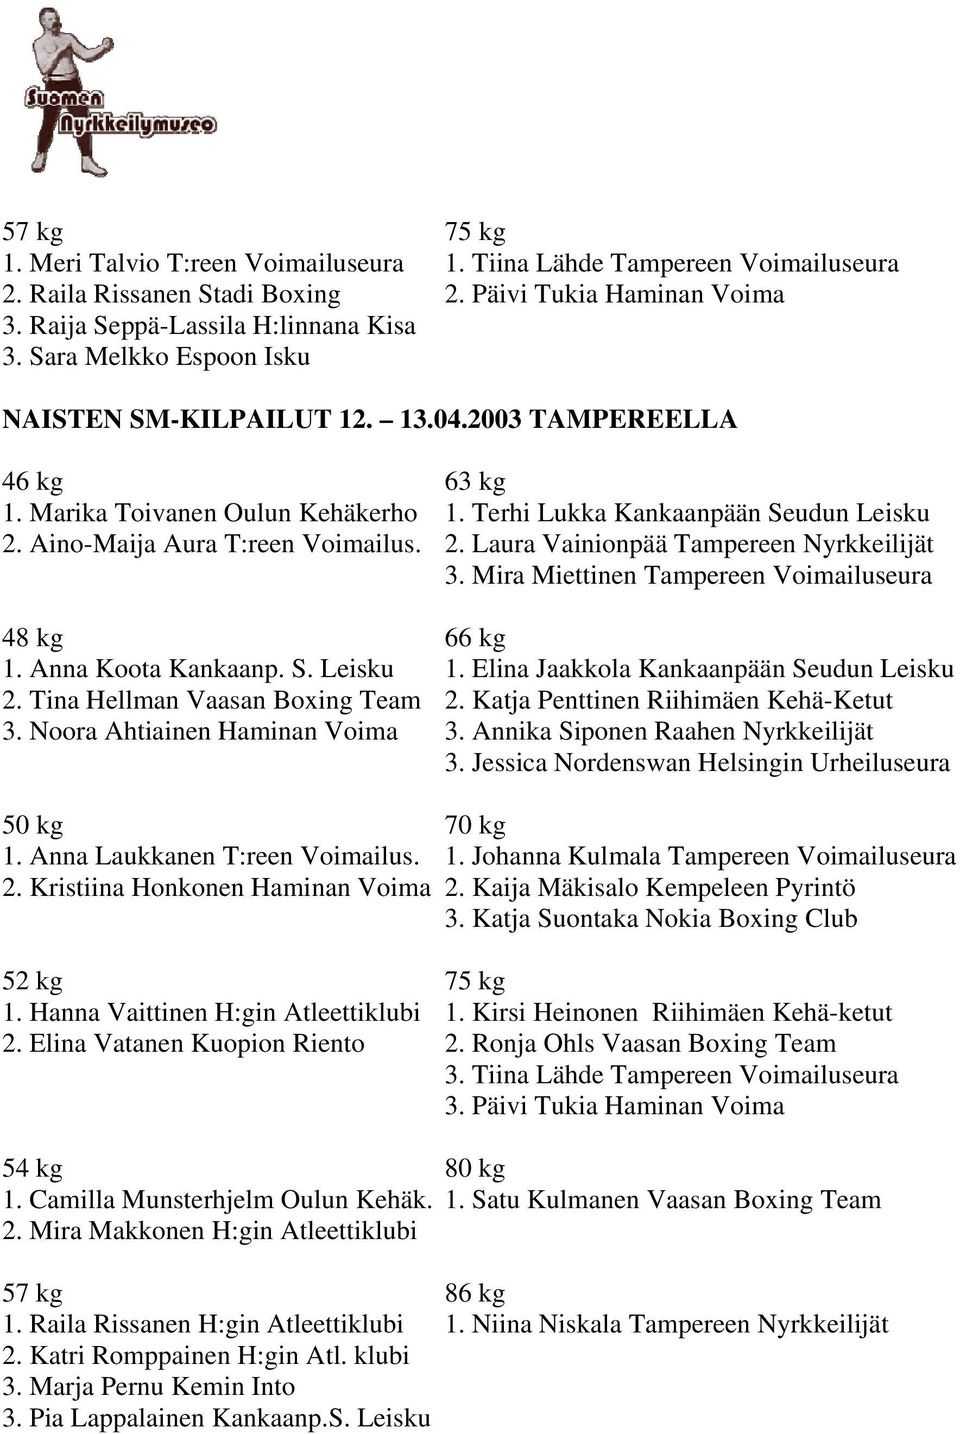 Aino-Maija Aura T:reen Voimailus. 2. Laura Vainionpää Tampereen Nyrkkeilijät 3. Mira Miettinen Tampereen Voimailuseura 48 kg 66 kg 1. Anna Koota Kankaanp. S. Leisku 1.